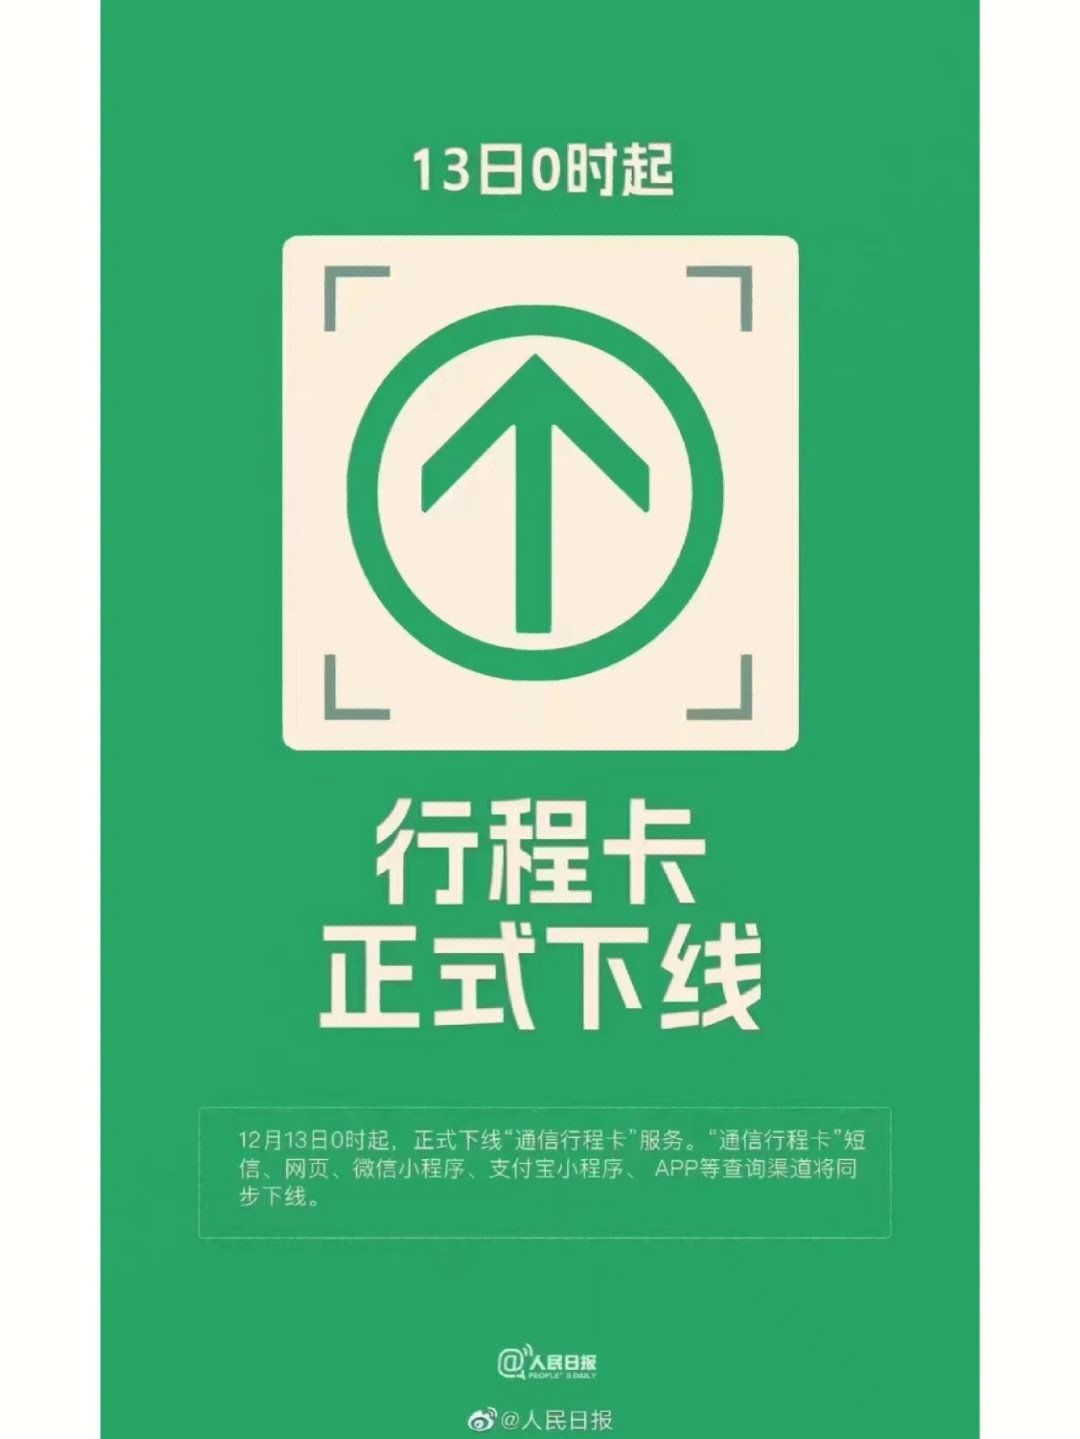 绿色行程卡二维码图片